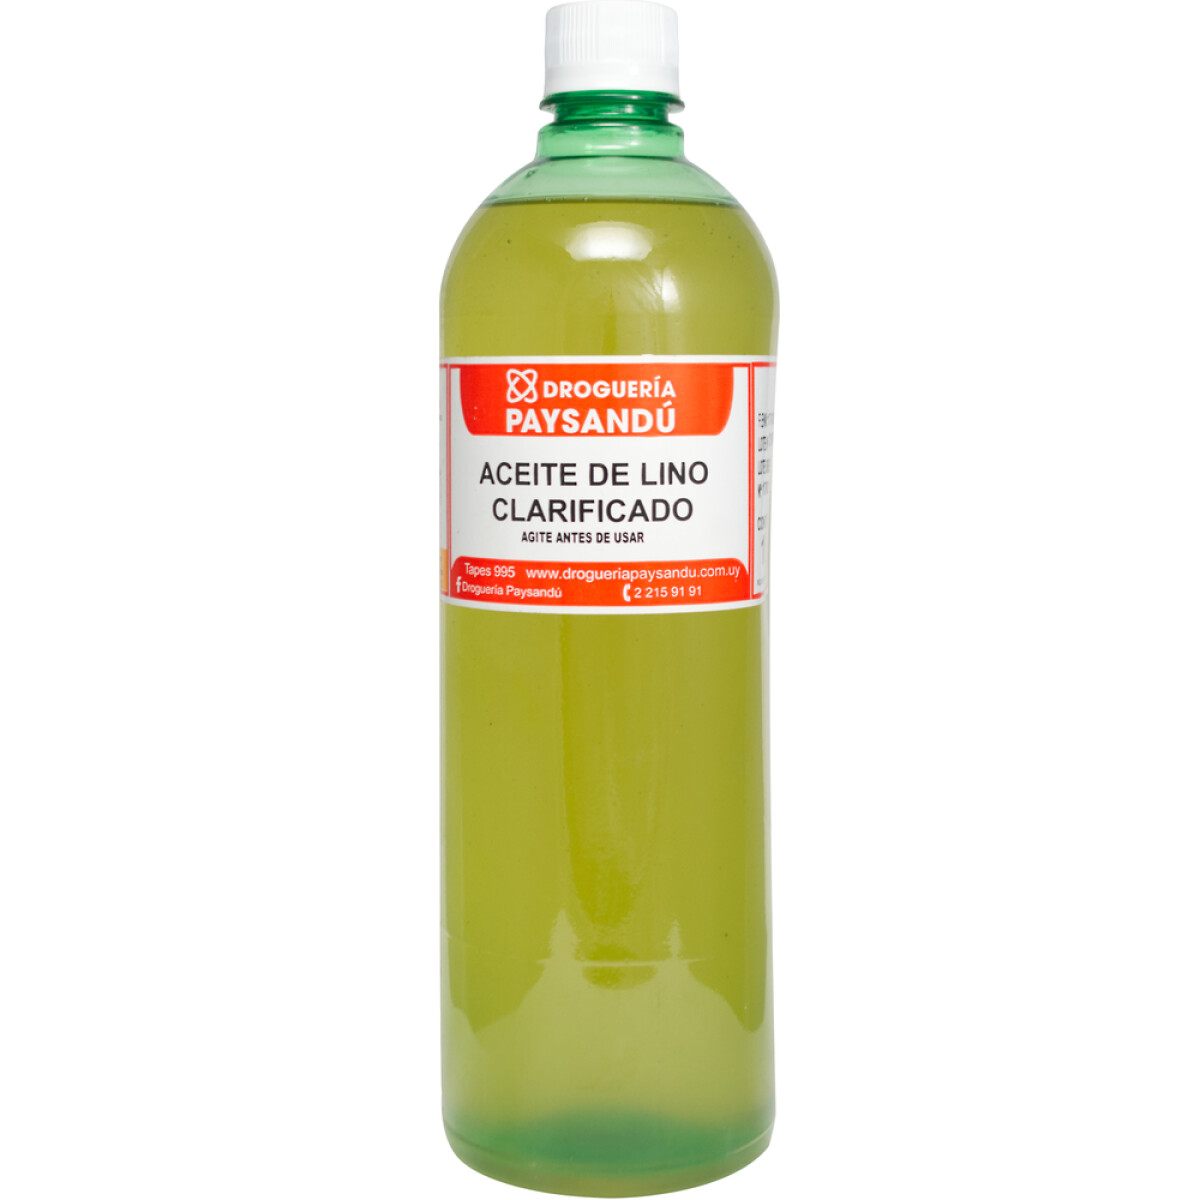 Aceite de Lino Clarificado - 1 L 